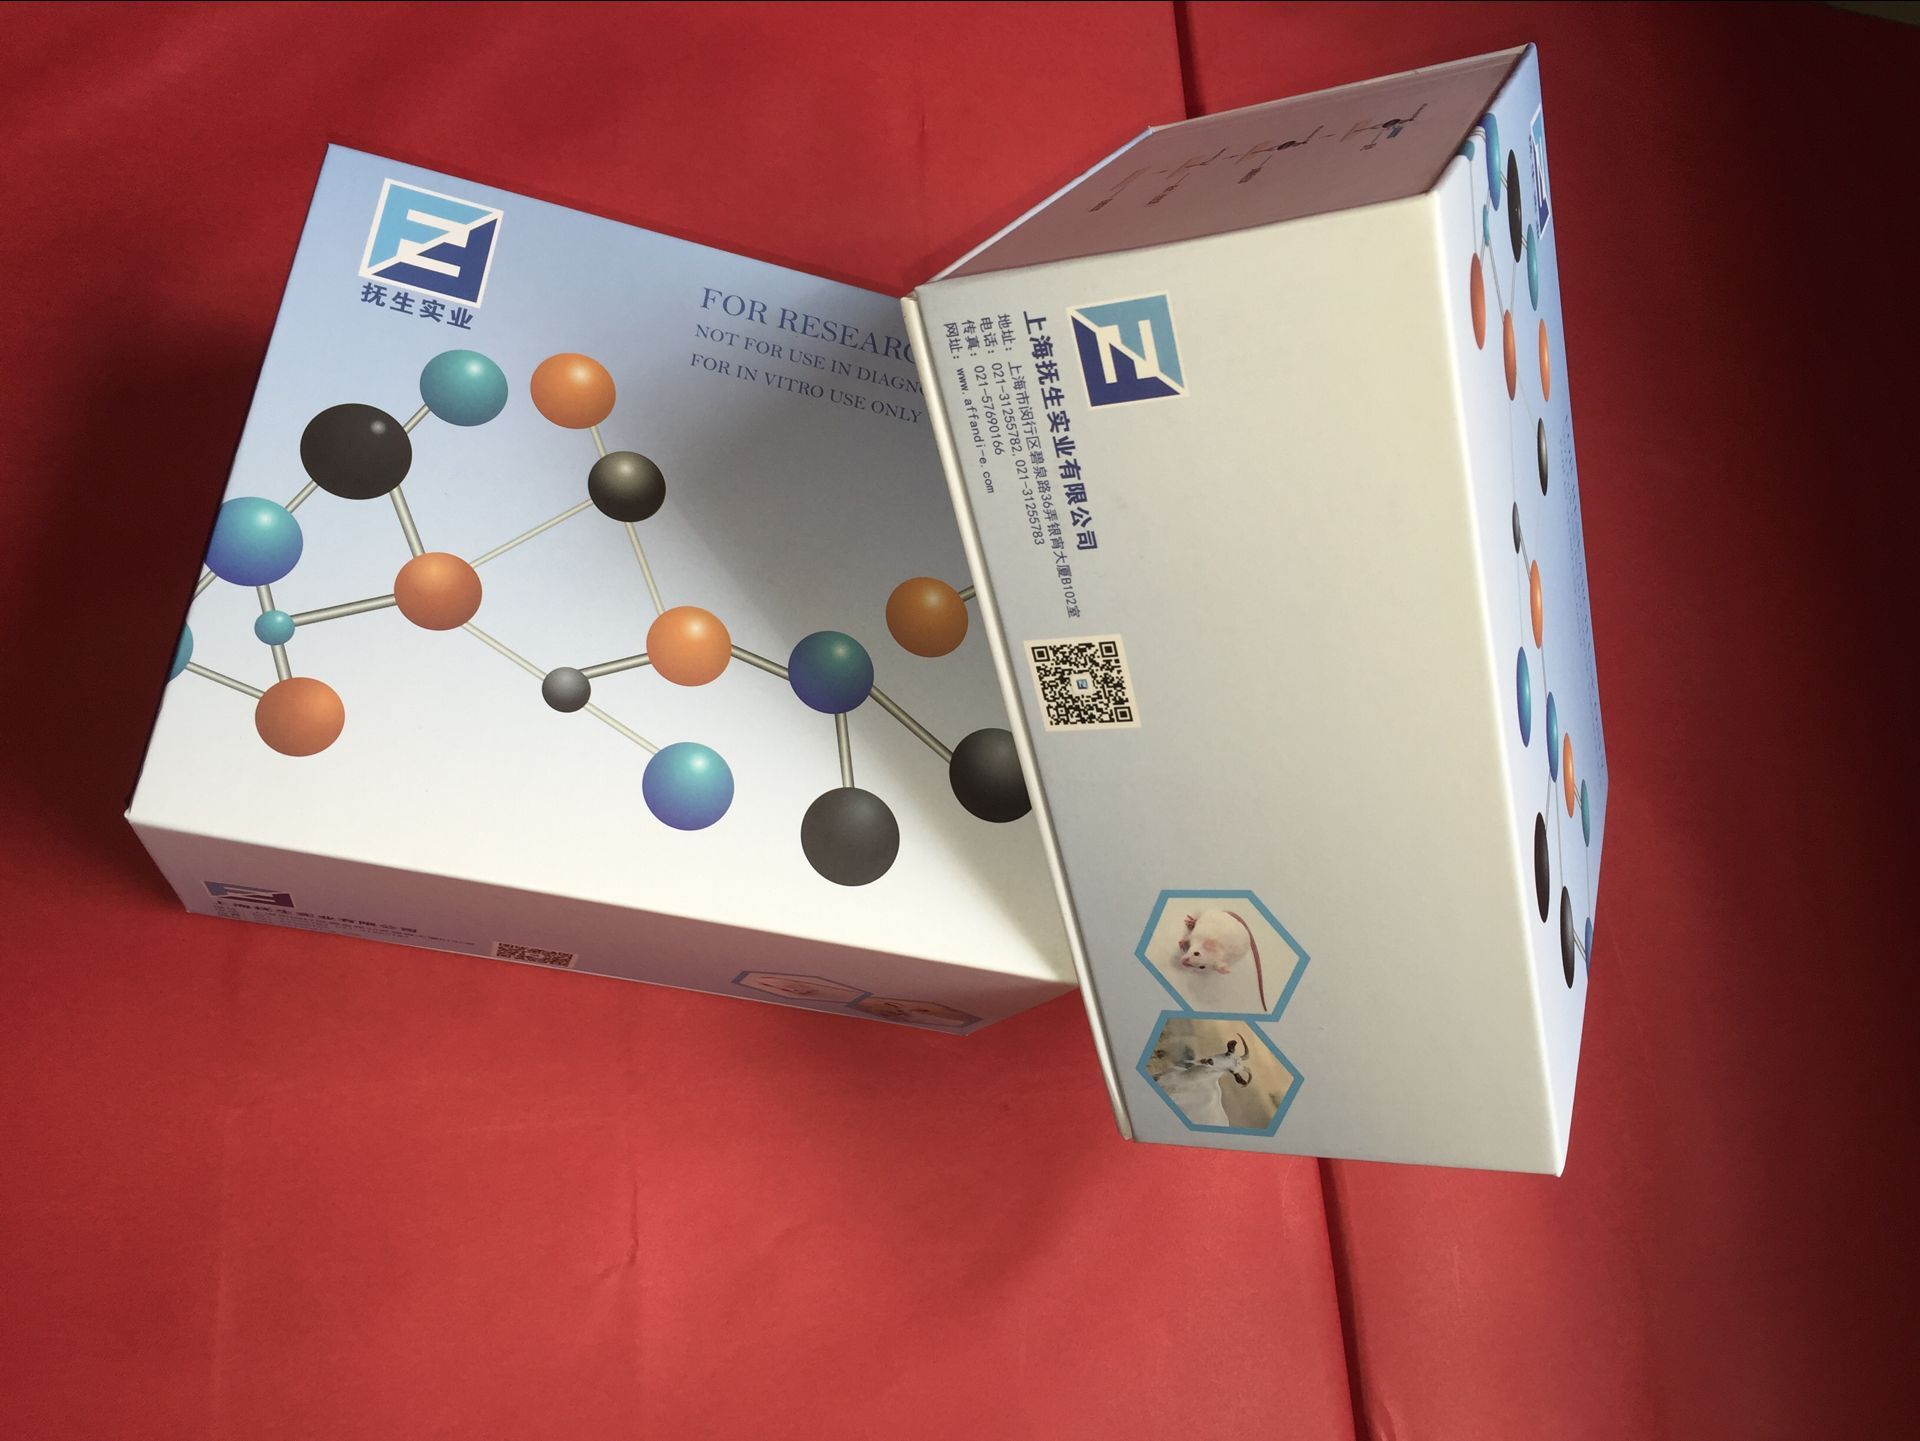 人催乳素(PRL)elisa检测试剂盒图片